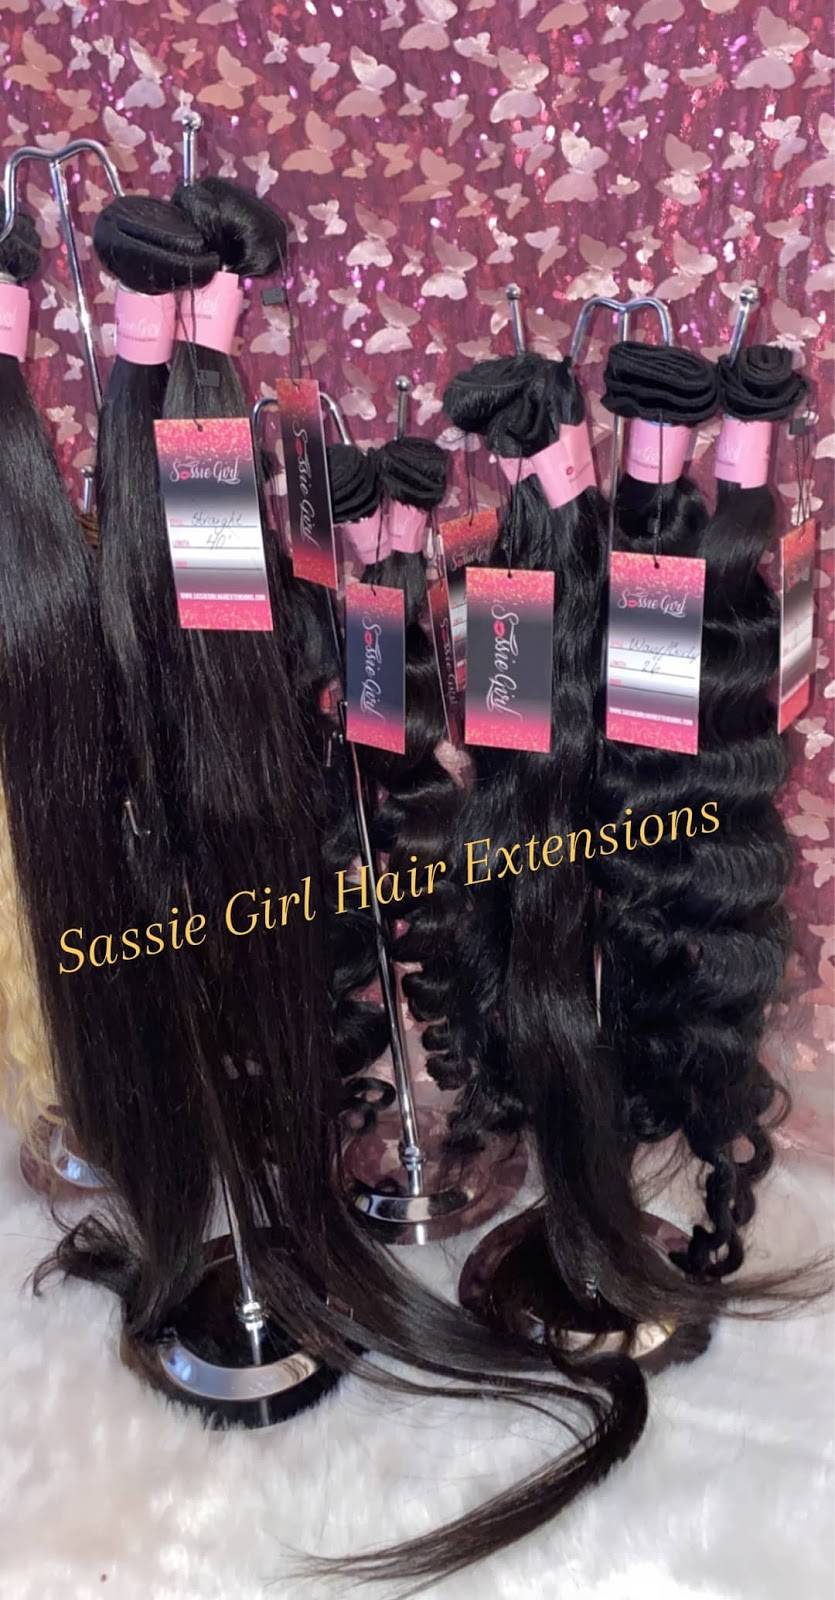 Sassie Girl Hair Extensions | 3301 E Artesia Blvd, Long Beach, CA 90805 | Phone: (562) 481-9410